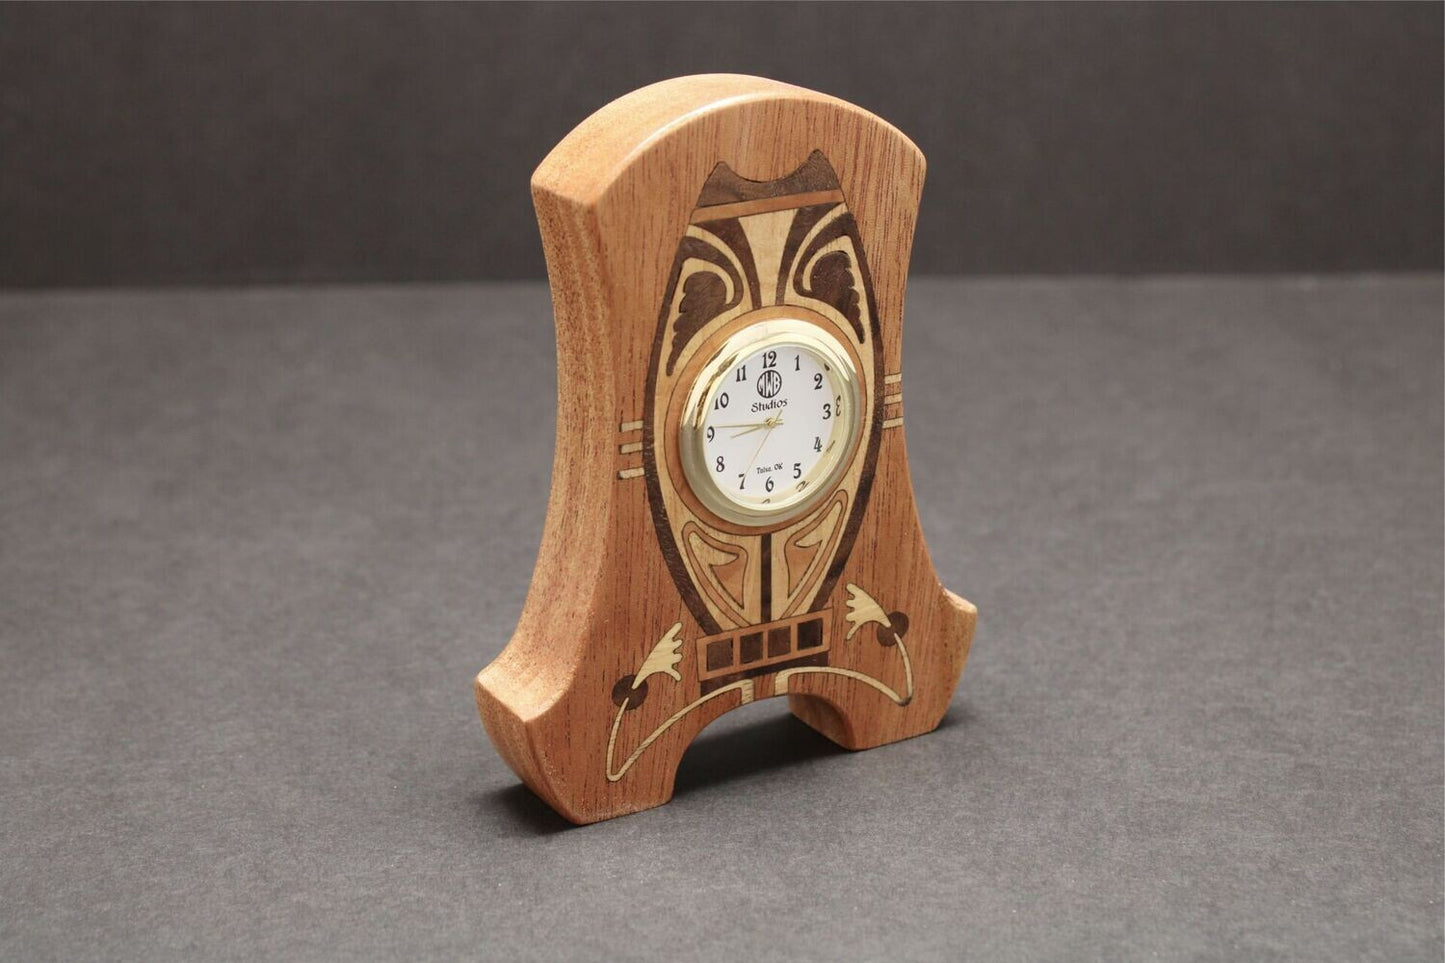 Inlaid Miniature Desk Clock    MDC-30    Made in the U.S.